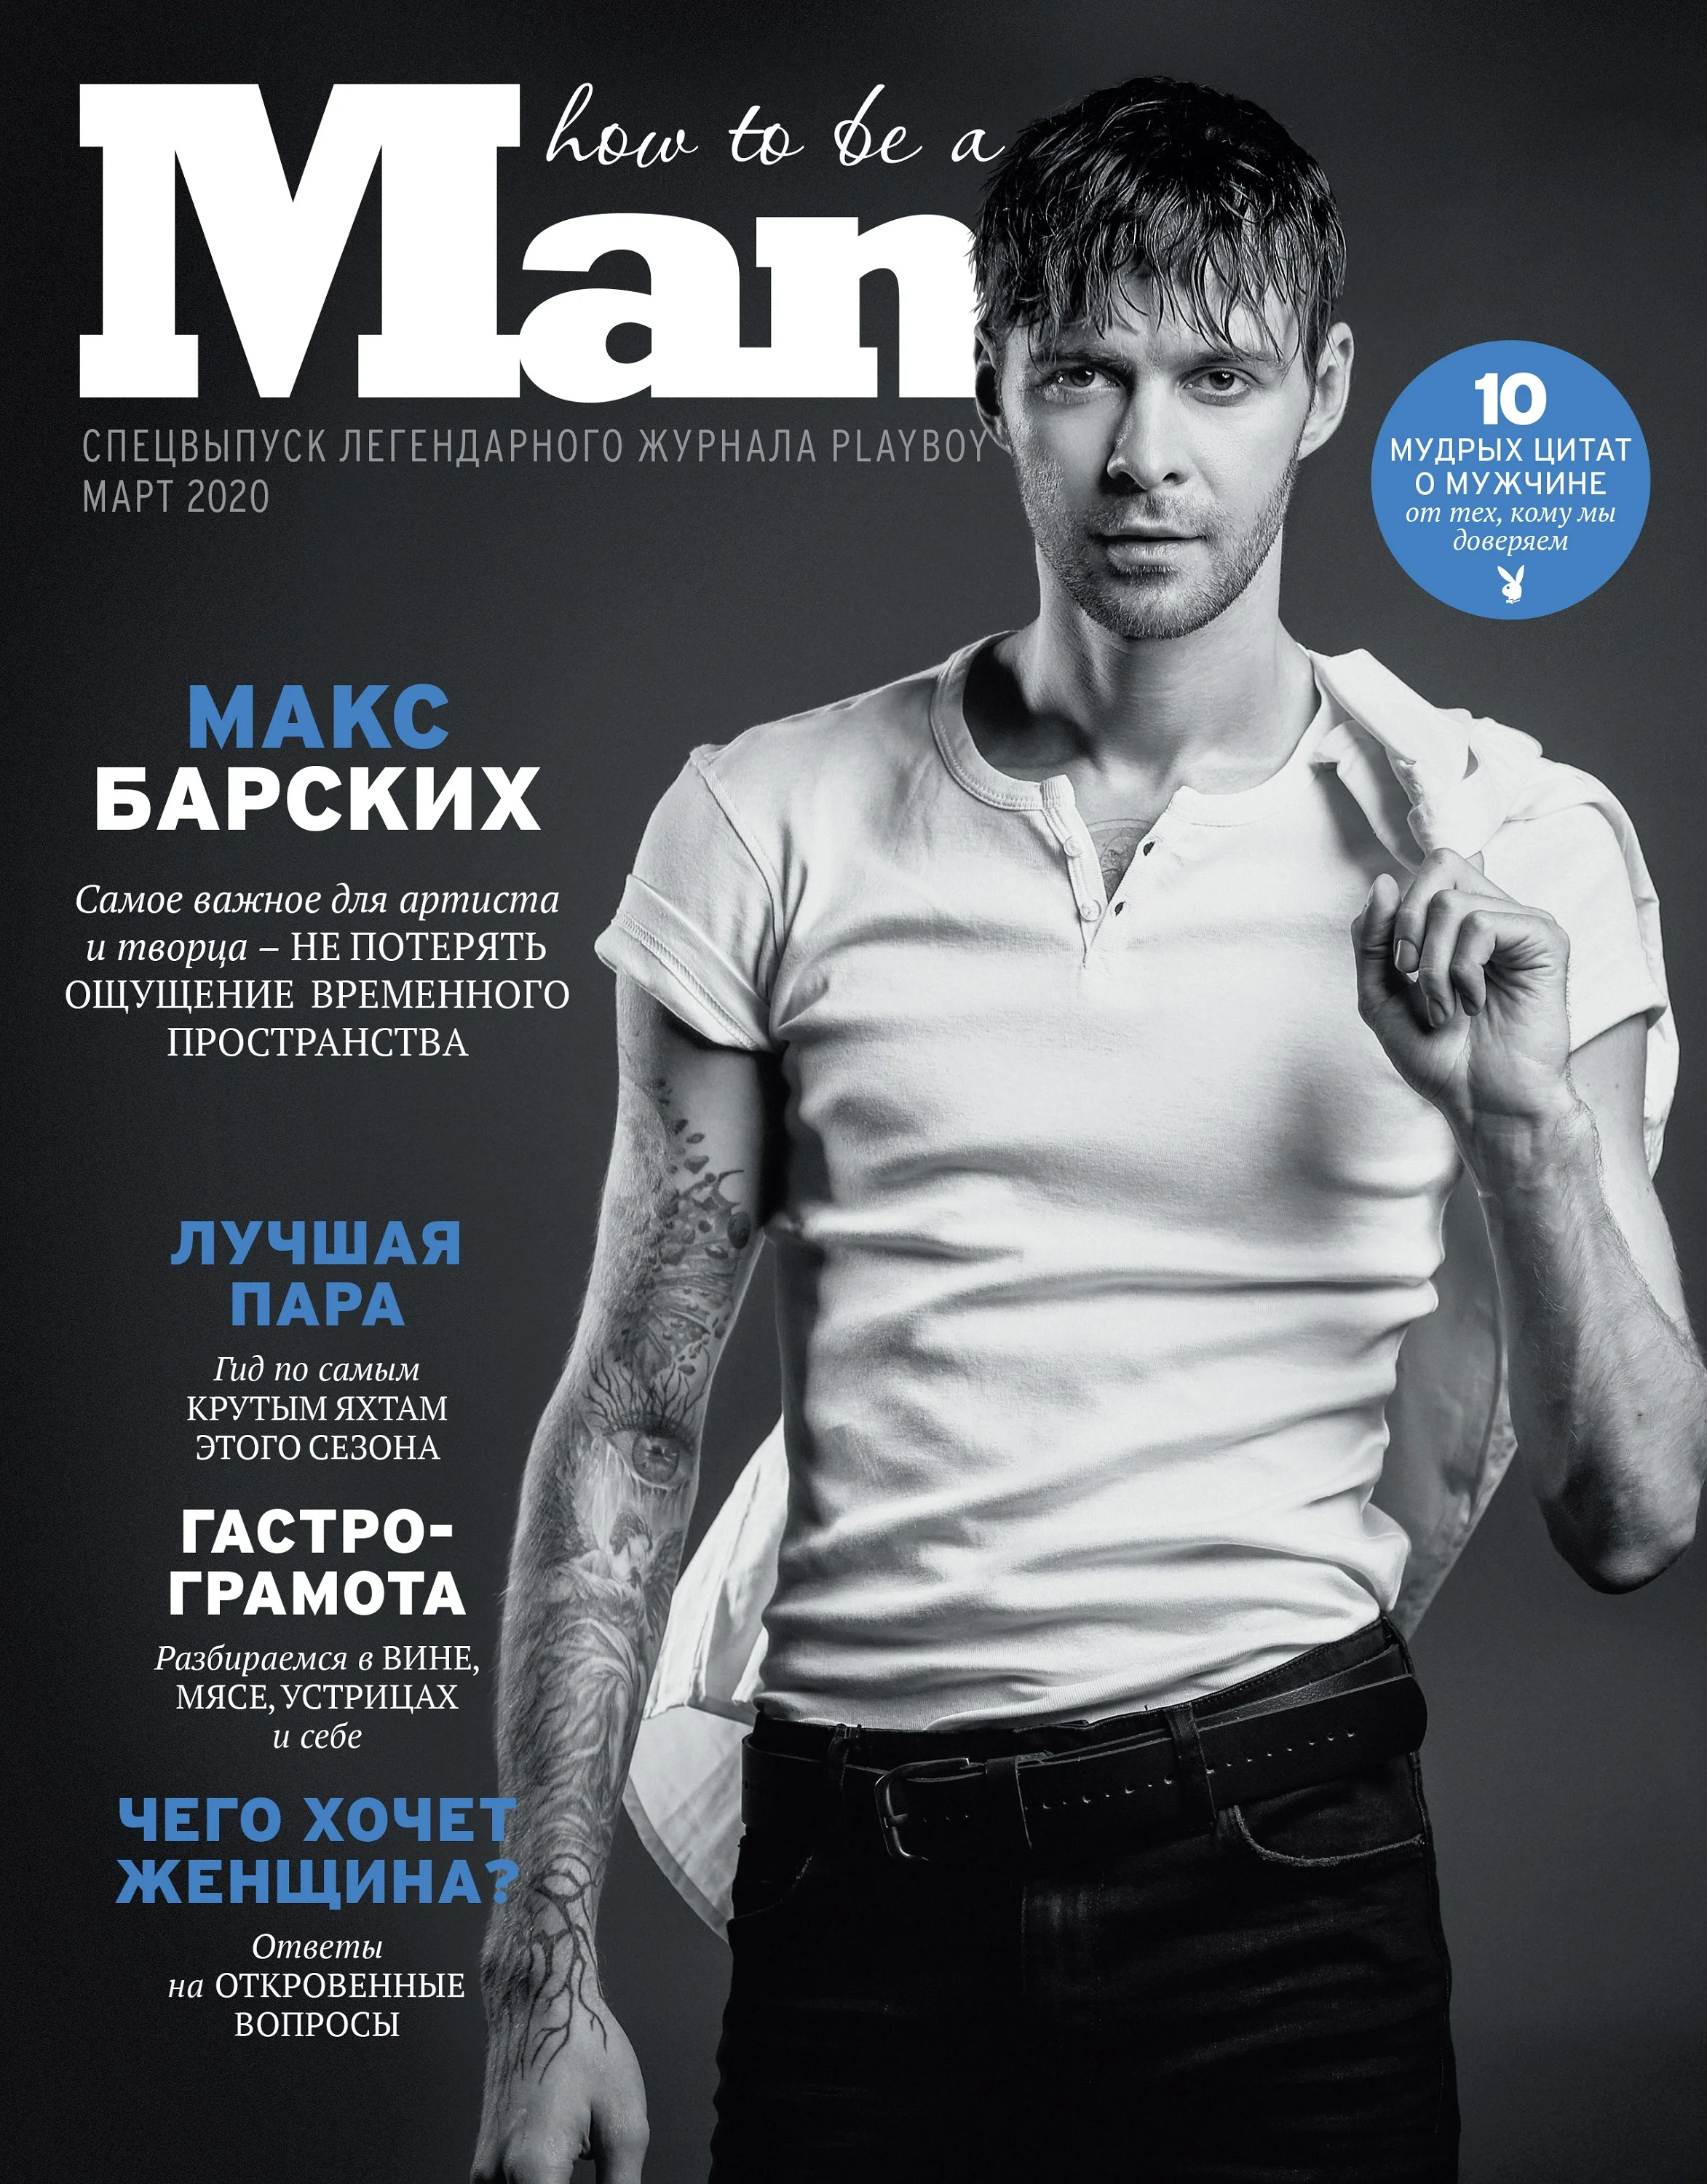 Макс Барских стал первым мужчиной из Украины, который украсил обложку PLAYBOY - фото 470161